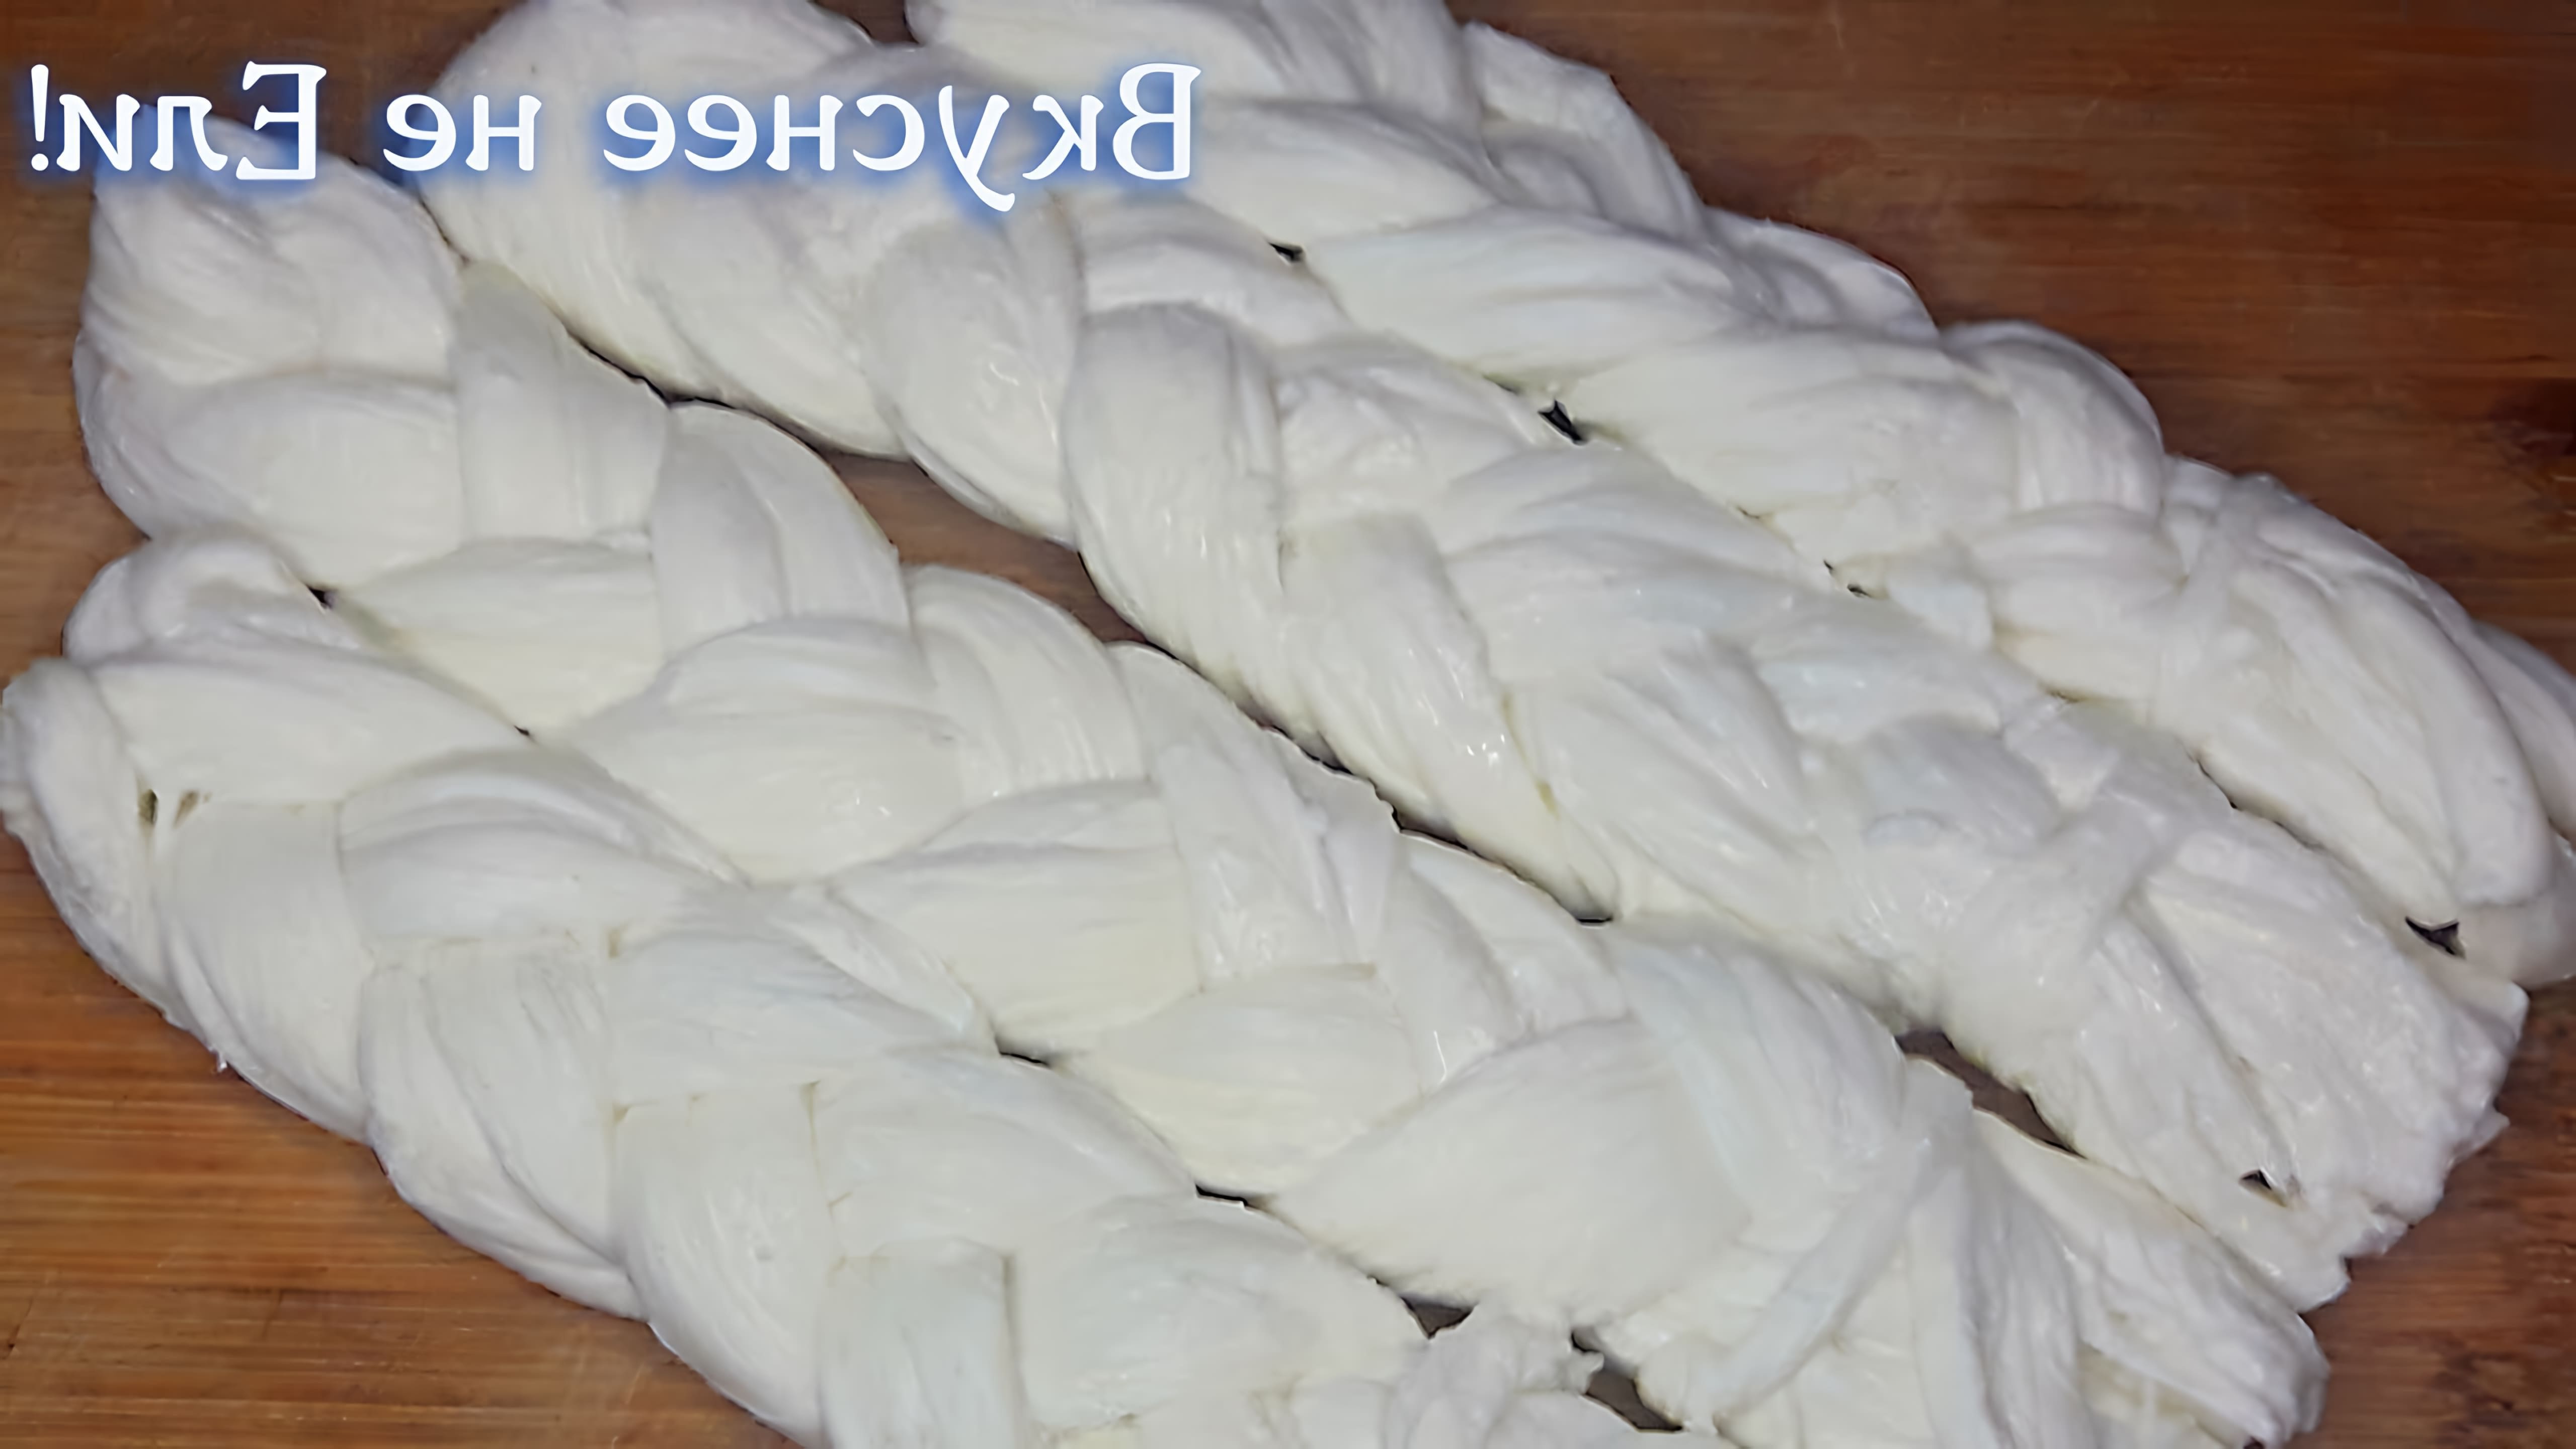 В этом видео демонстрируется процесс приготовления сыра "Косичка" на Кавказе